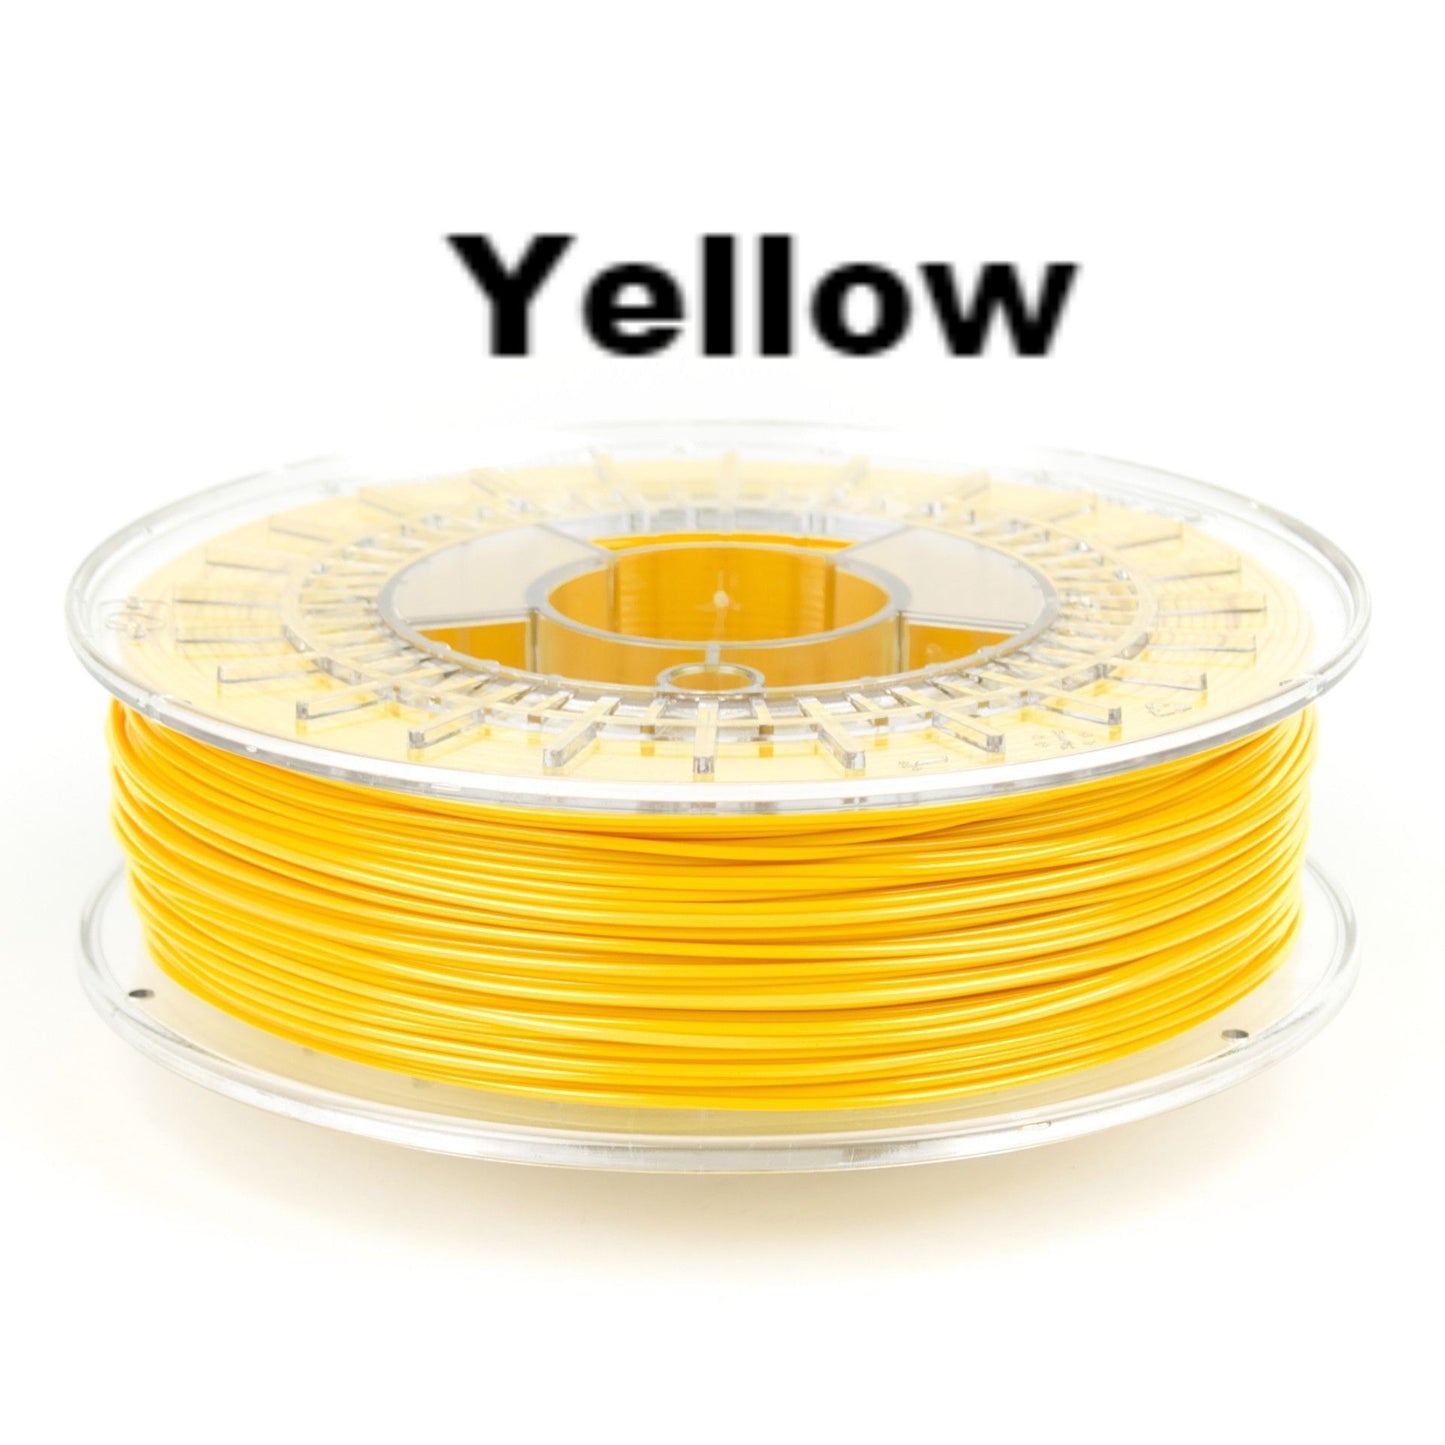 ColorFabb XT 1.75mm X 750g Yellow